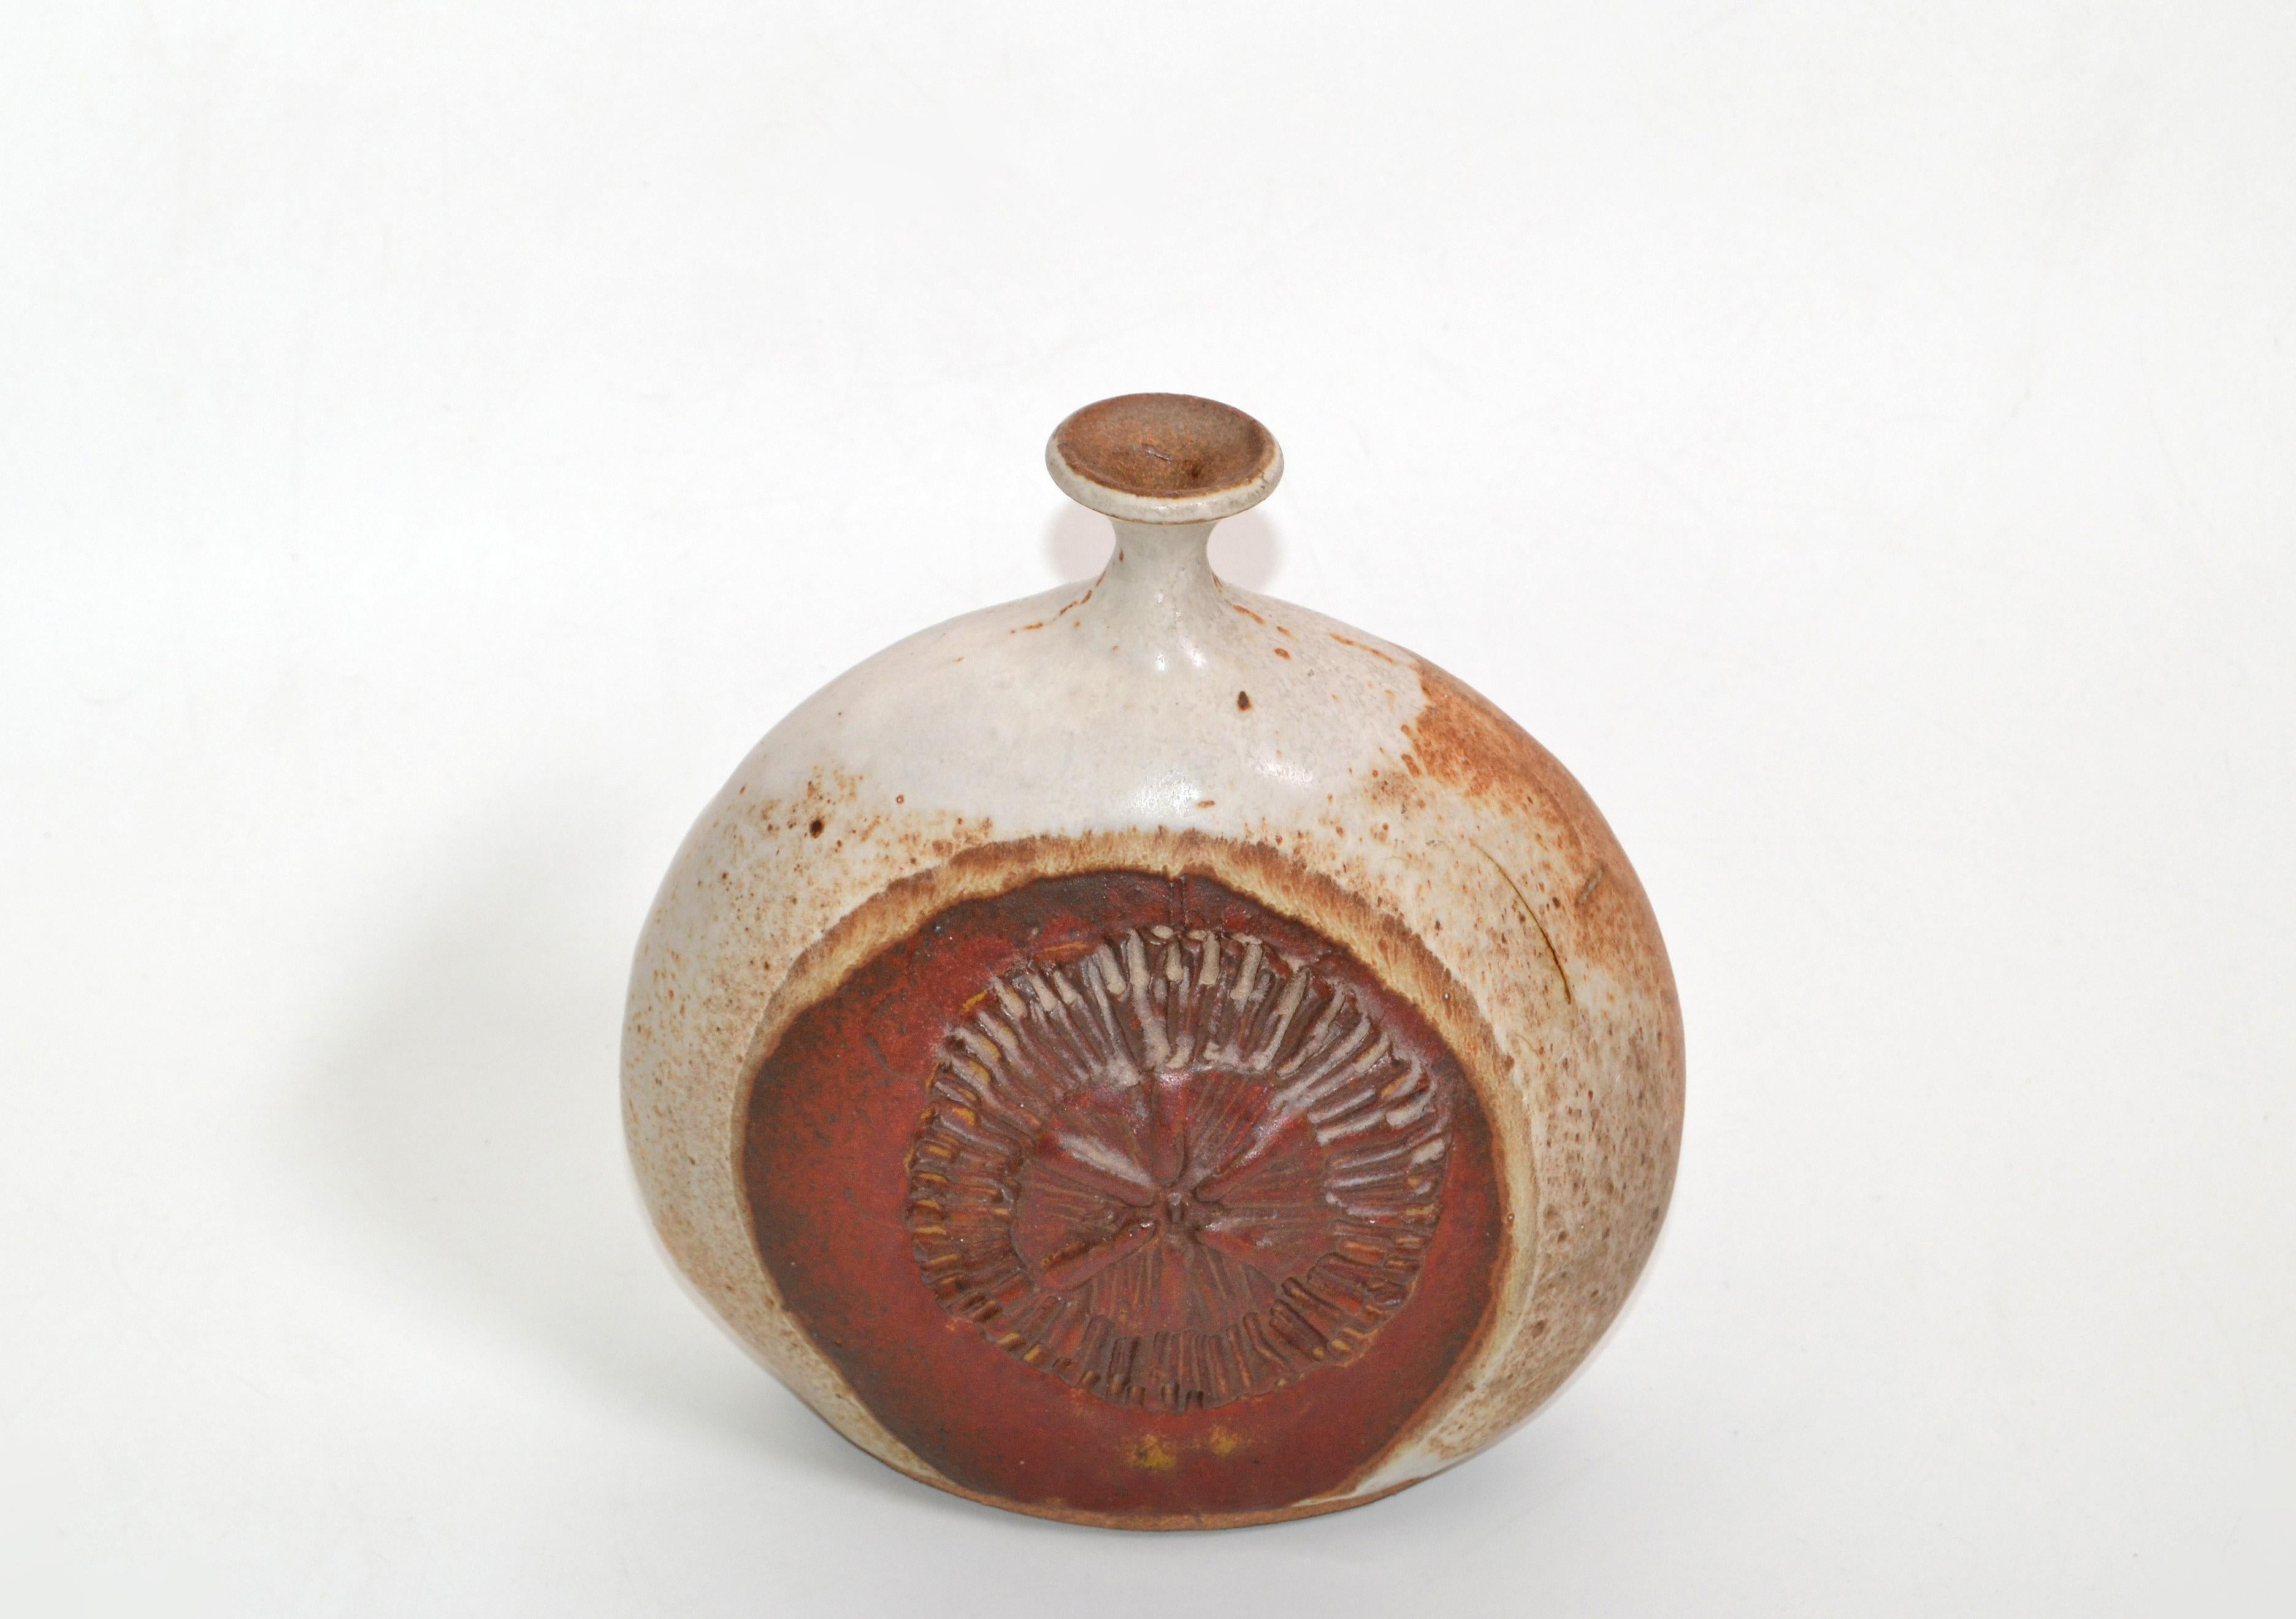 Vintage Steingut handgefertigt braun und rot Studio Stück mit Tropf Glasur Knospe oder Unkraut Studio Stück Vase, Dekanter, Gefäß.
Töpferkunst in hervorragender Handwerkskunst.